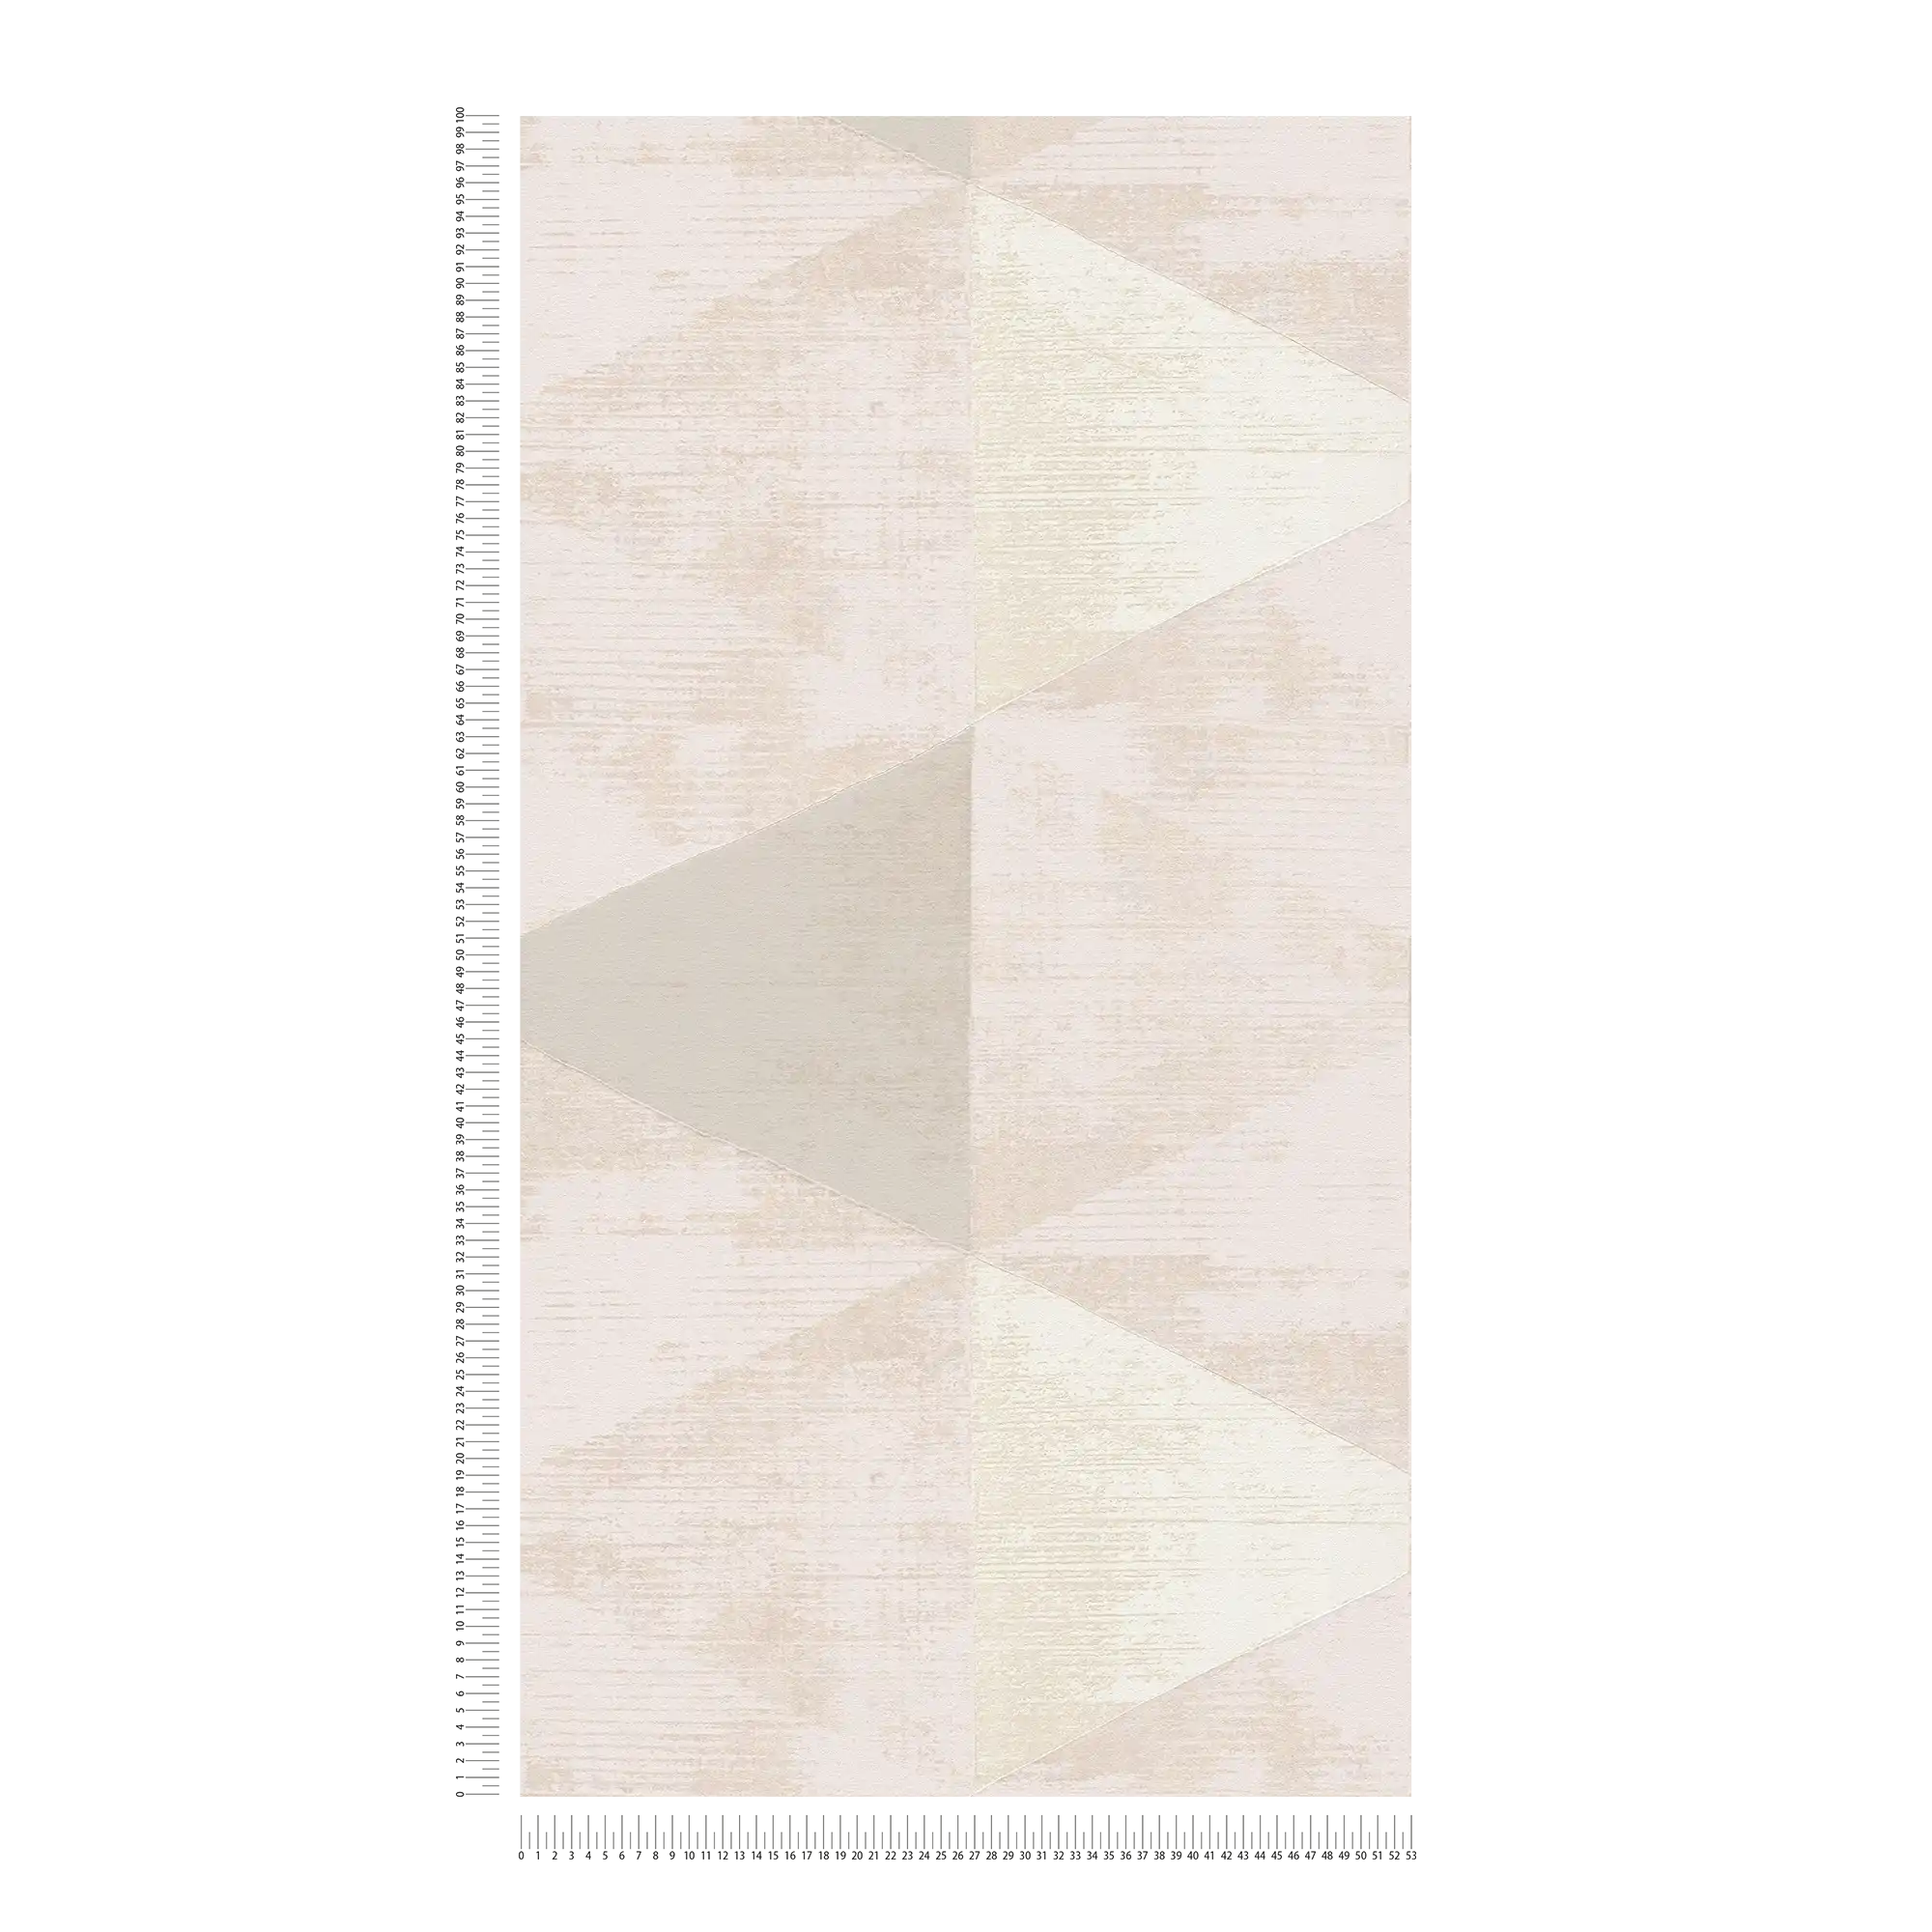             Vliesbehang facetpatroon met metallic accent - metallic, beige, crème
        